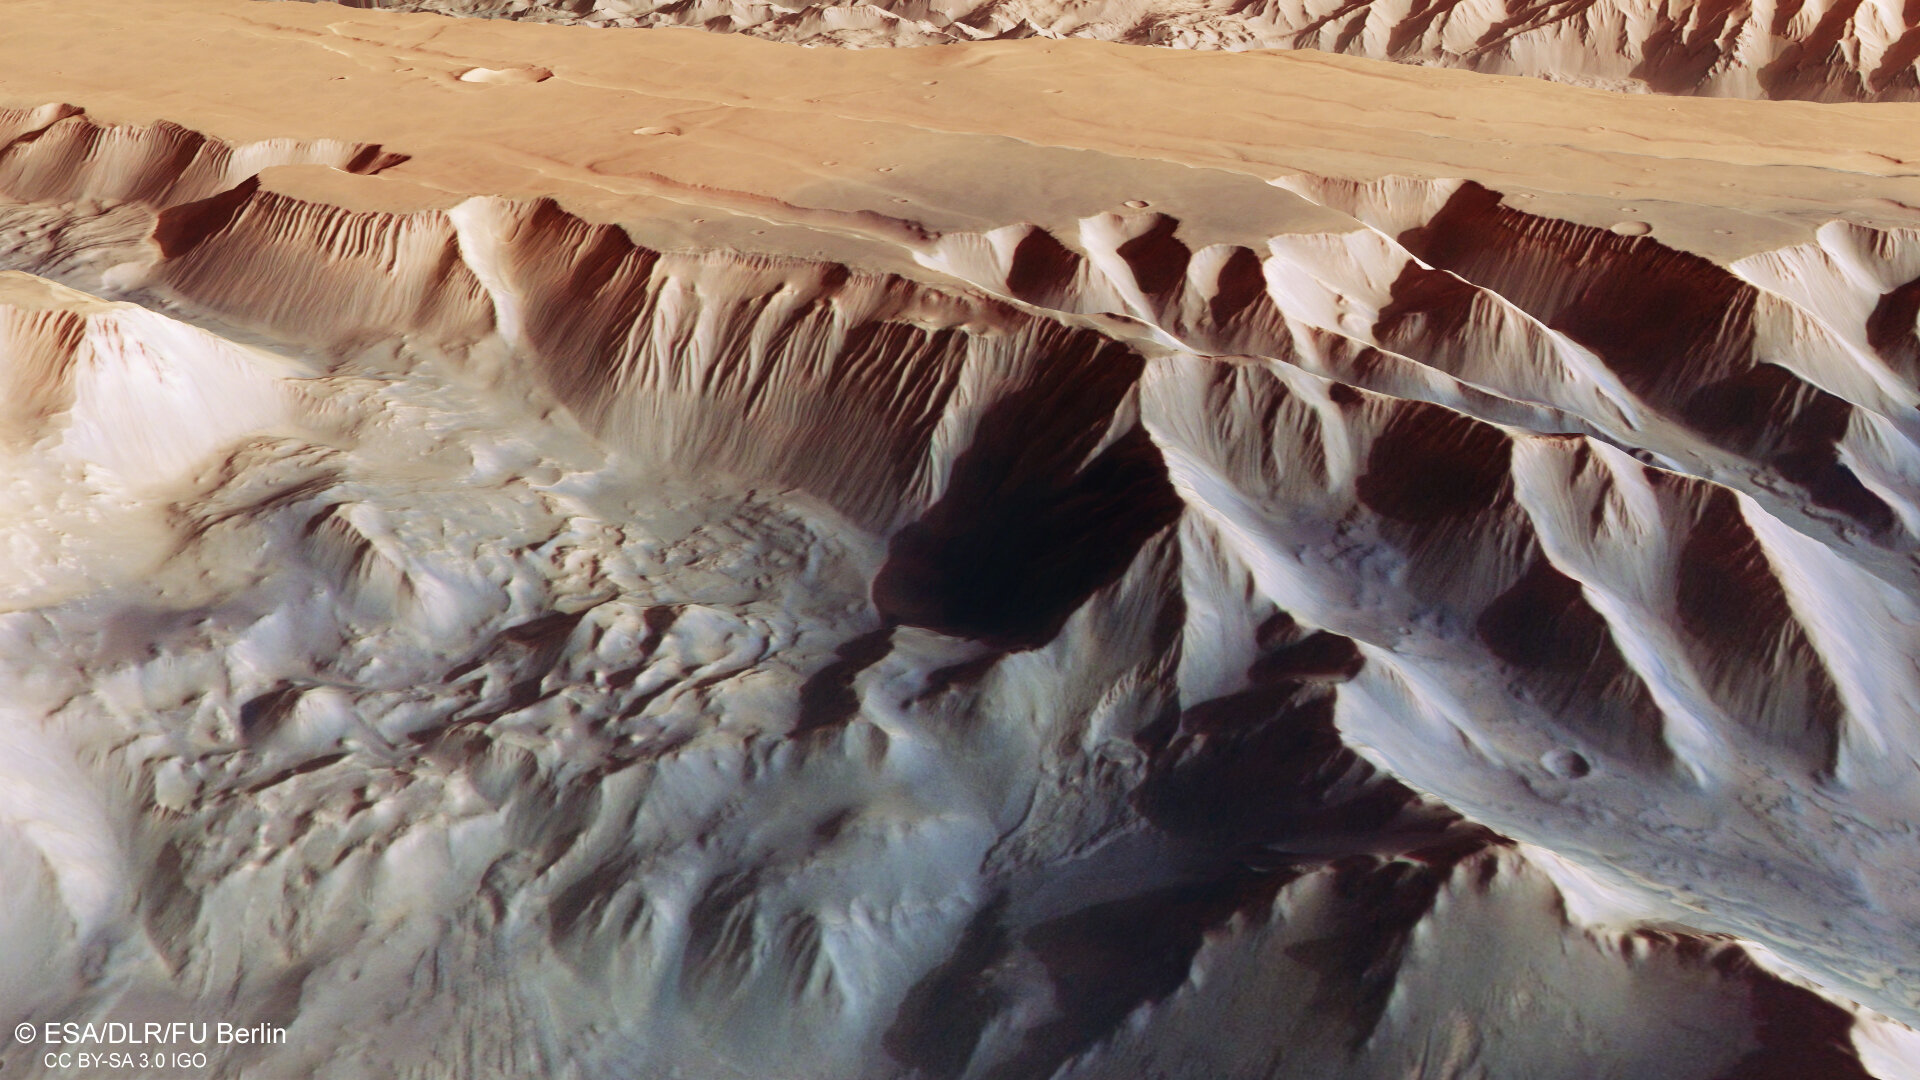 Этот наклонный перспективный вид Chasmata tithonium, который является частью структуры Valles Marineris на Марсе, был создан на основе цифровой модели местности, аналоговых и цветных каналов стереокамеры высокого разрешения на борту Mars Express Европейского космического агентства.